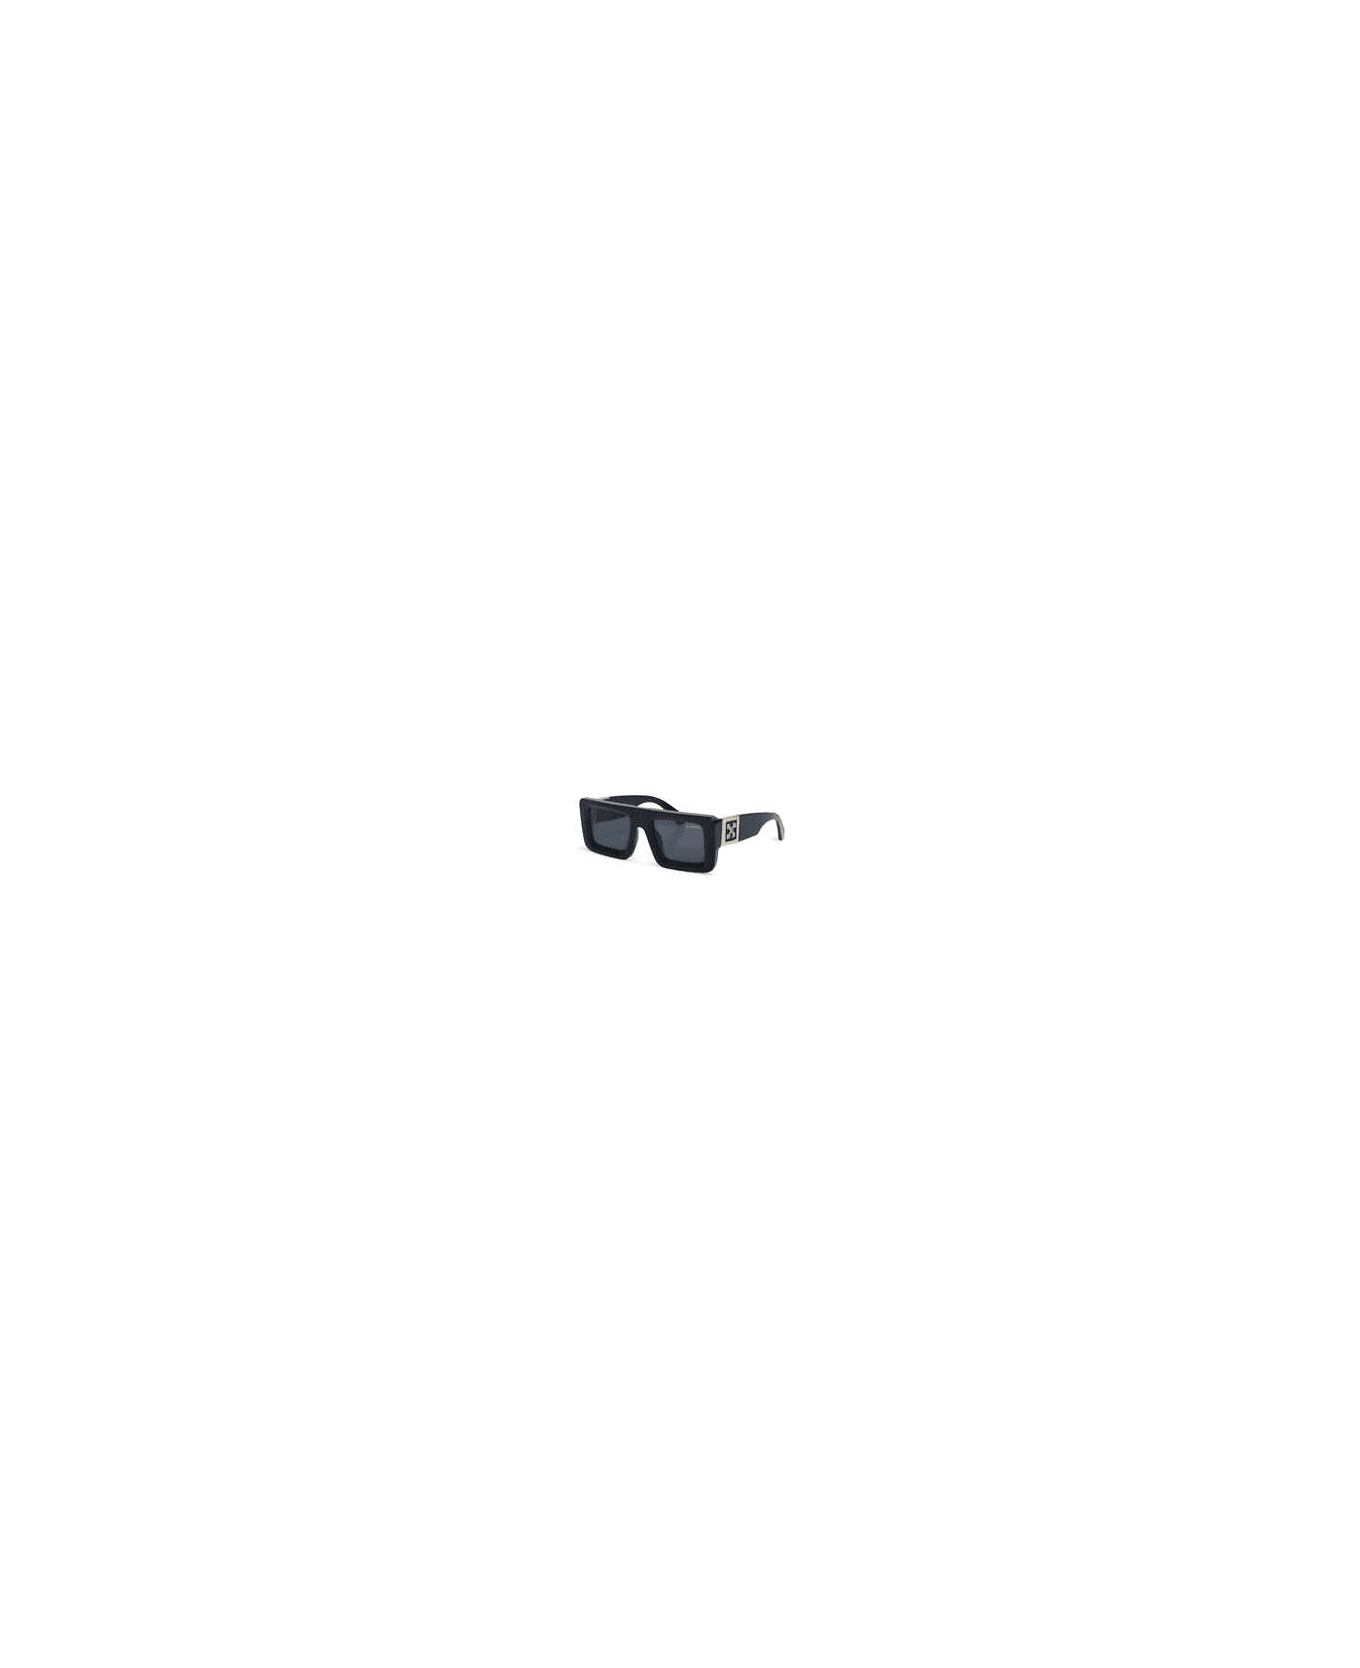 Off-White LEONARDO SUNGLASSES Sunglasses - Black